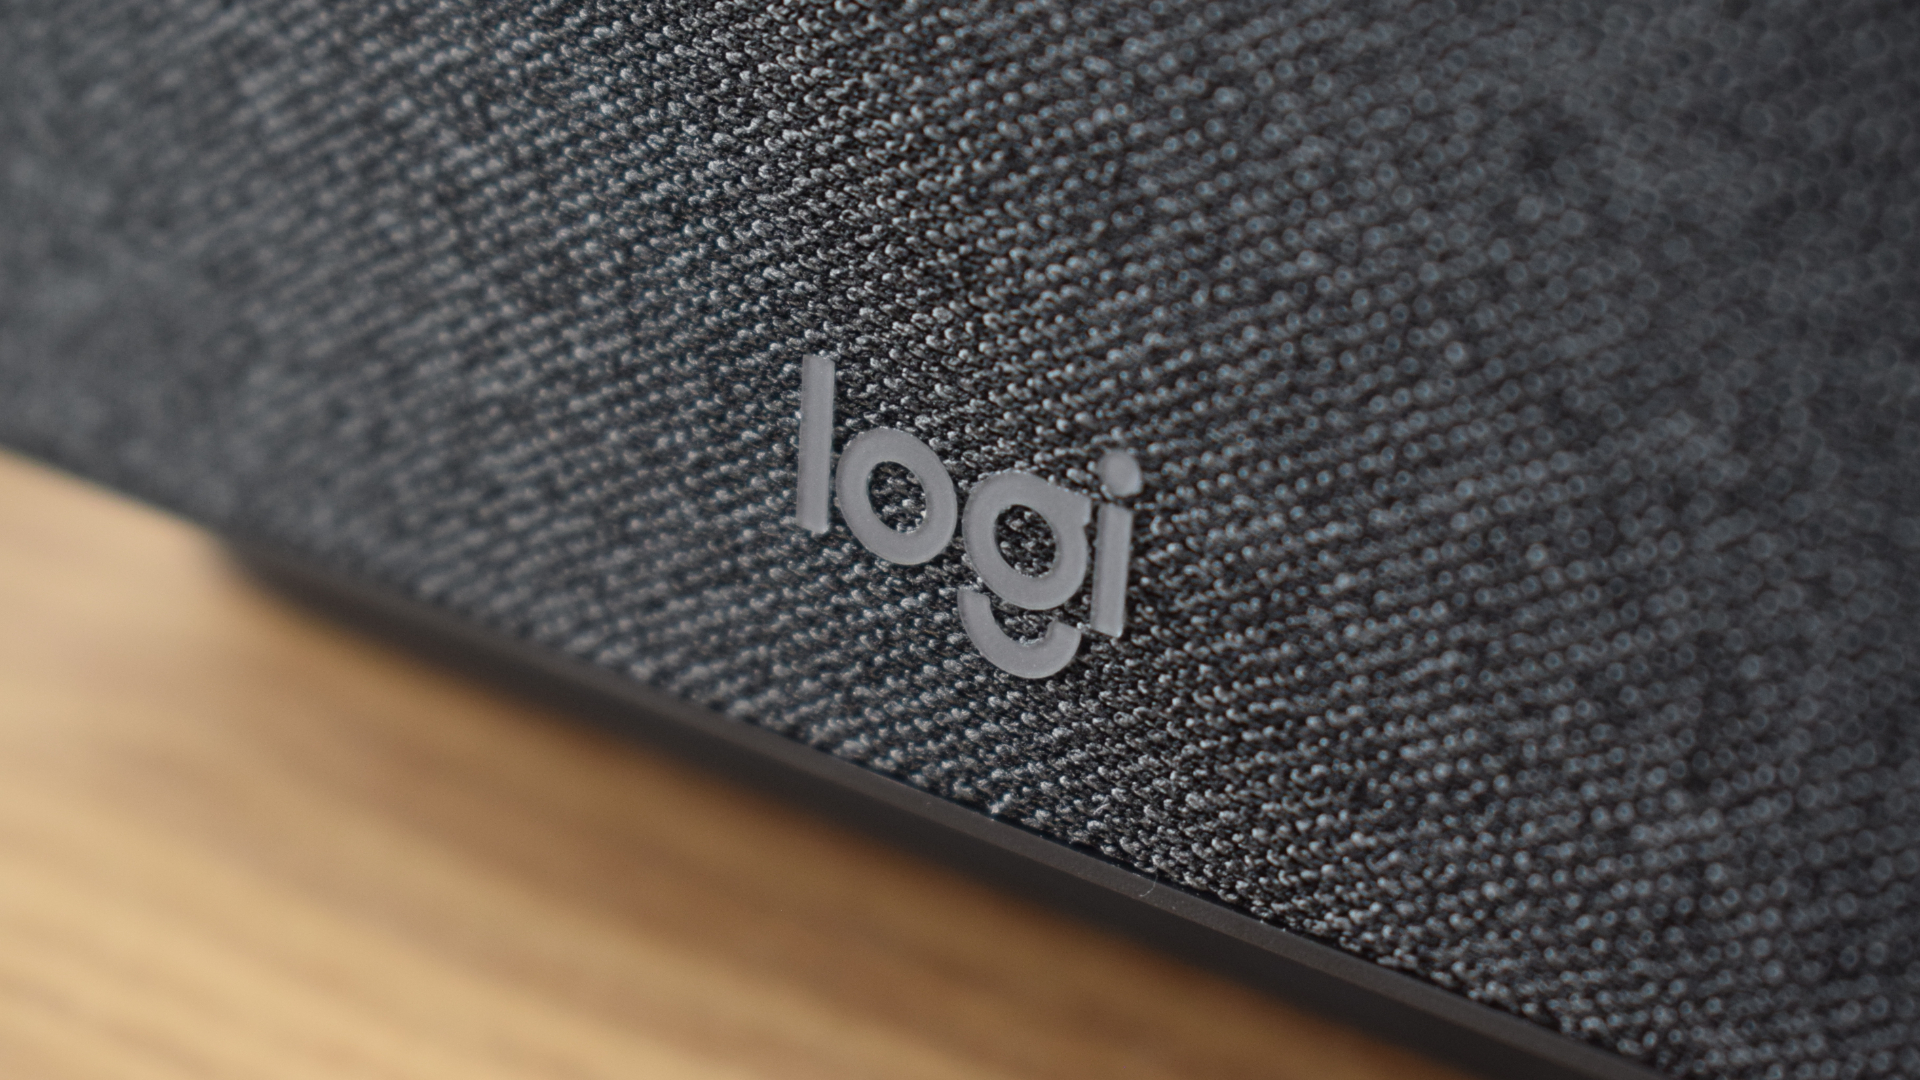 Logitech Logi Dock review photos